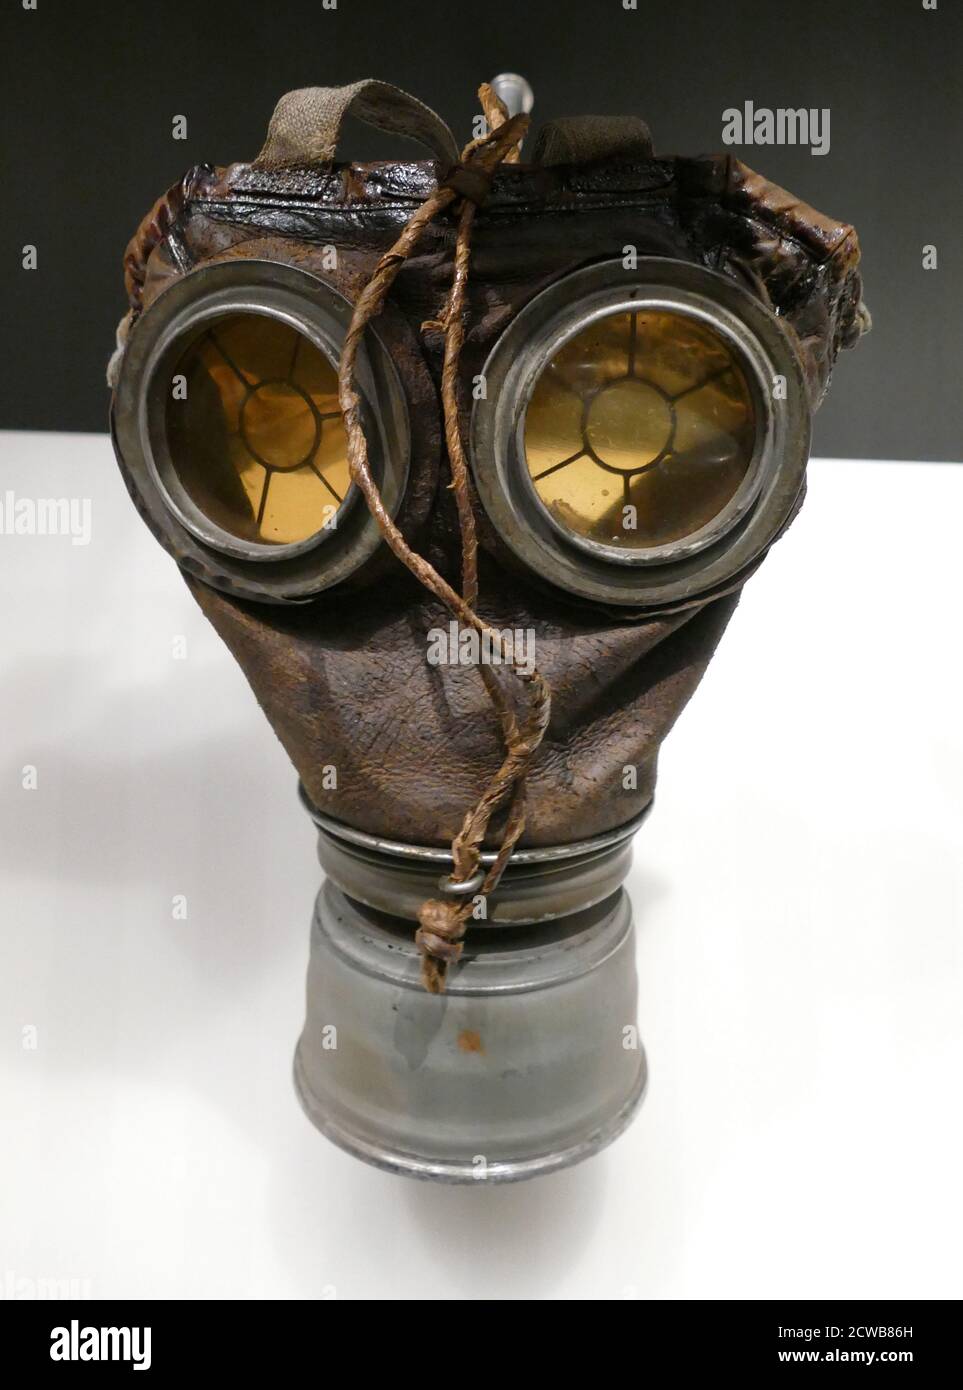 Masque à gaz de la première Guerre mondiale pour un cheval utilisé pour transporter l'artillerie ou d'autres charges en Belgique. Vers 1916 Banque D'Images